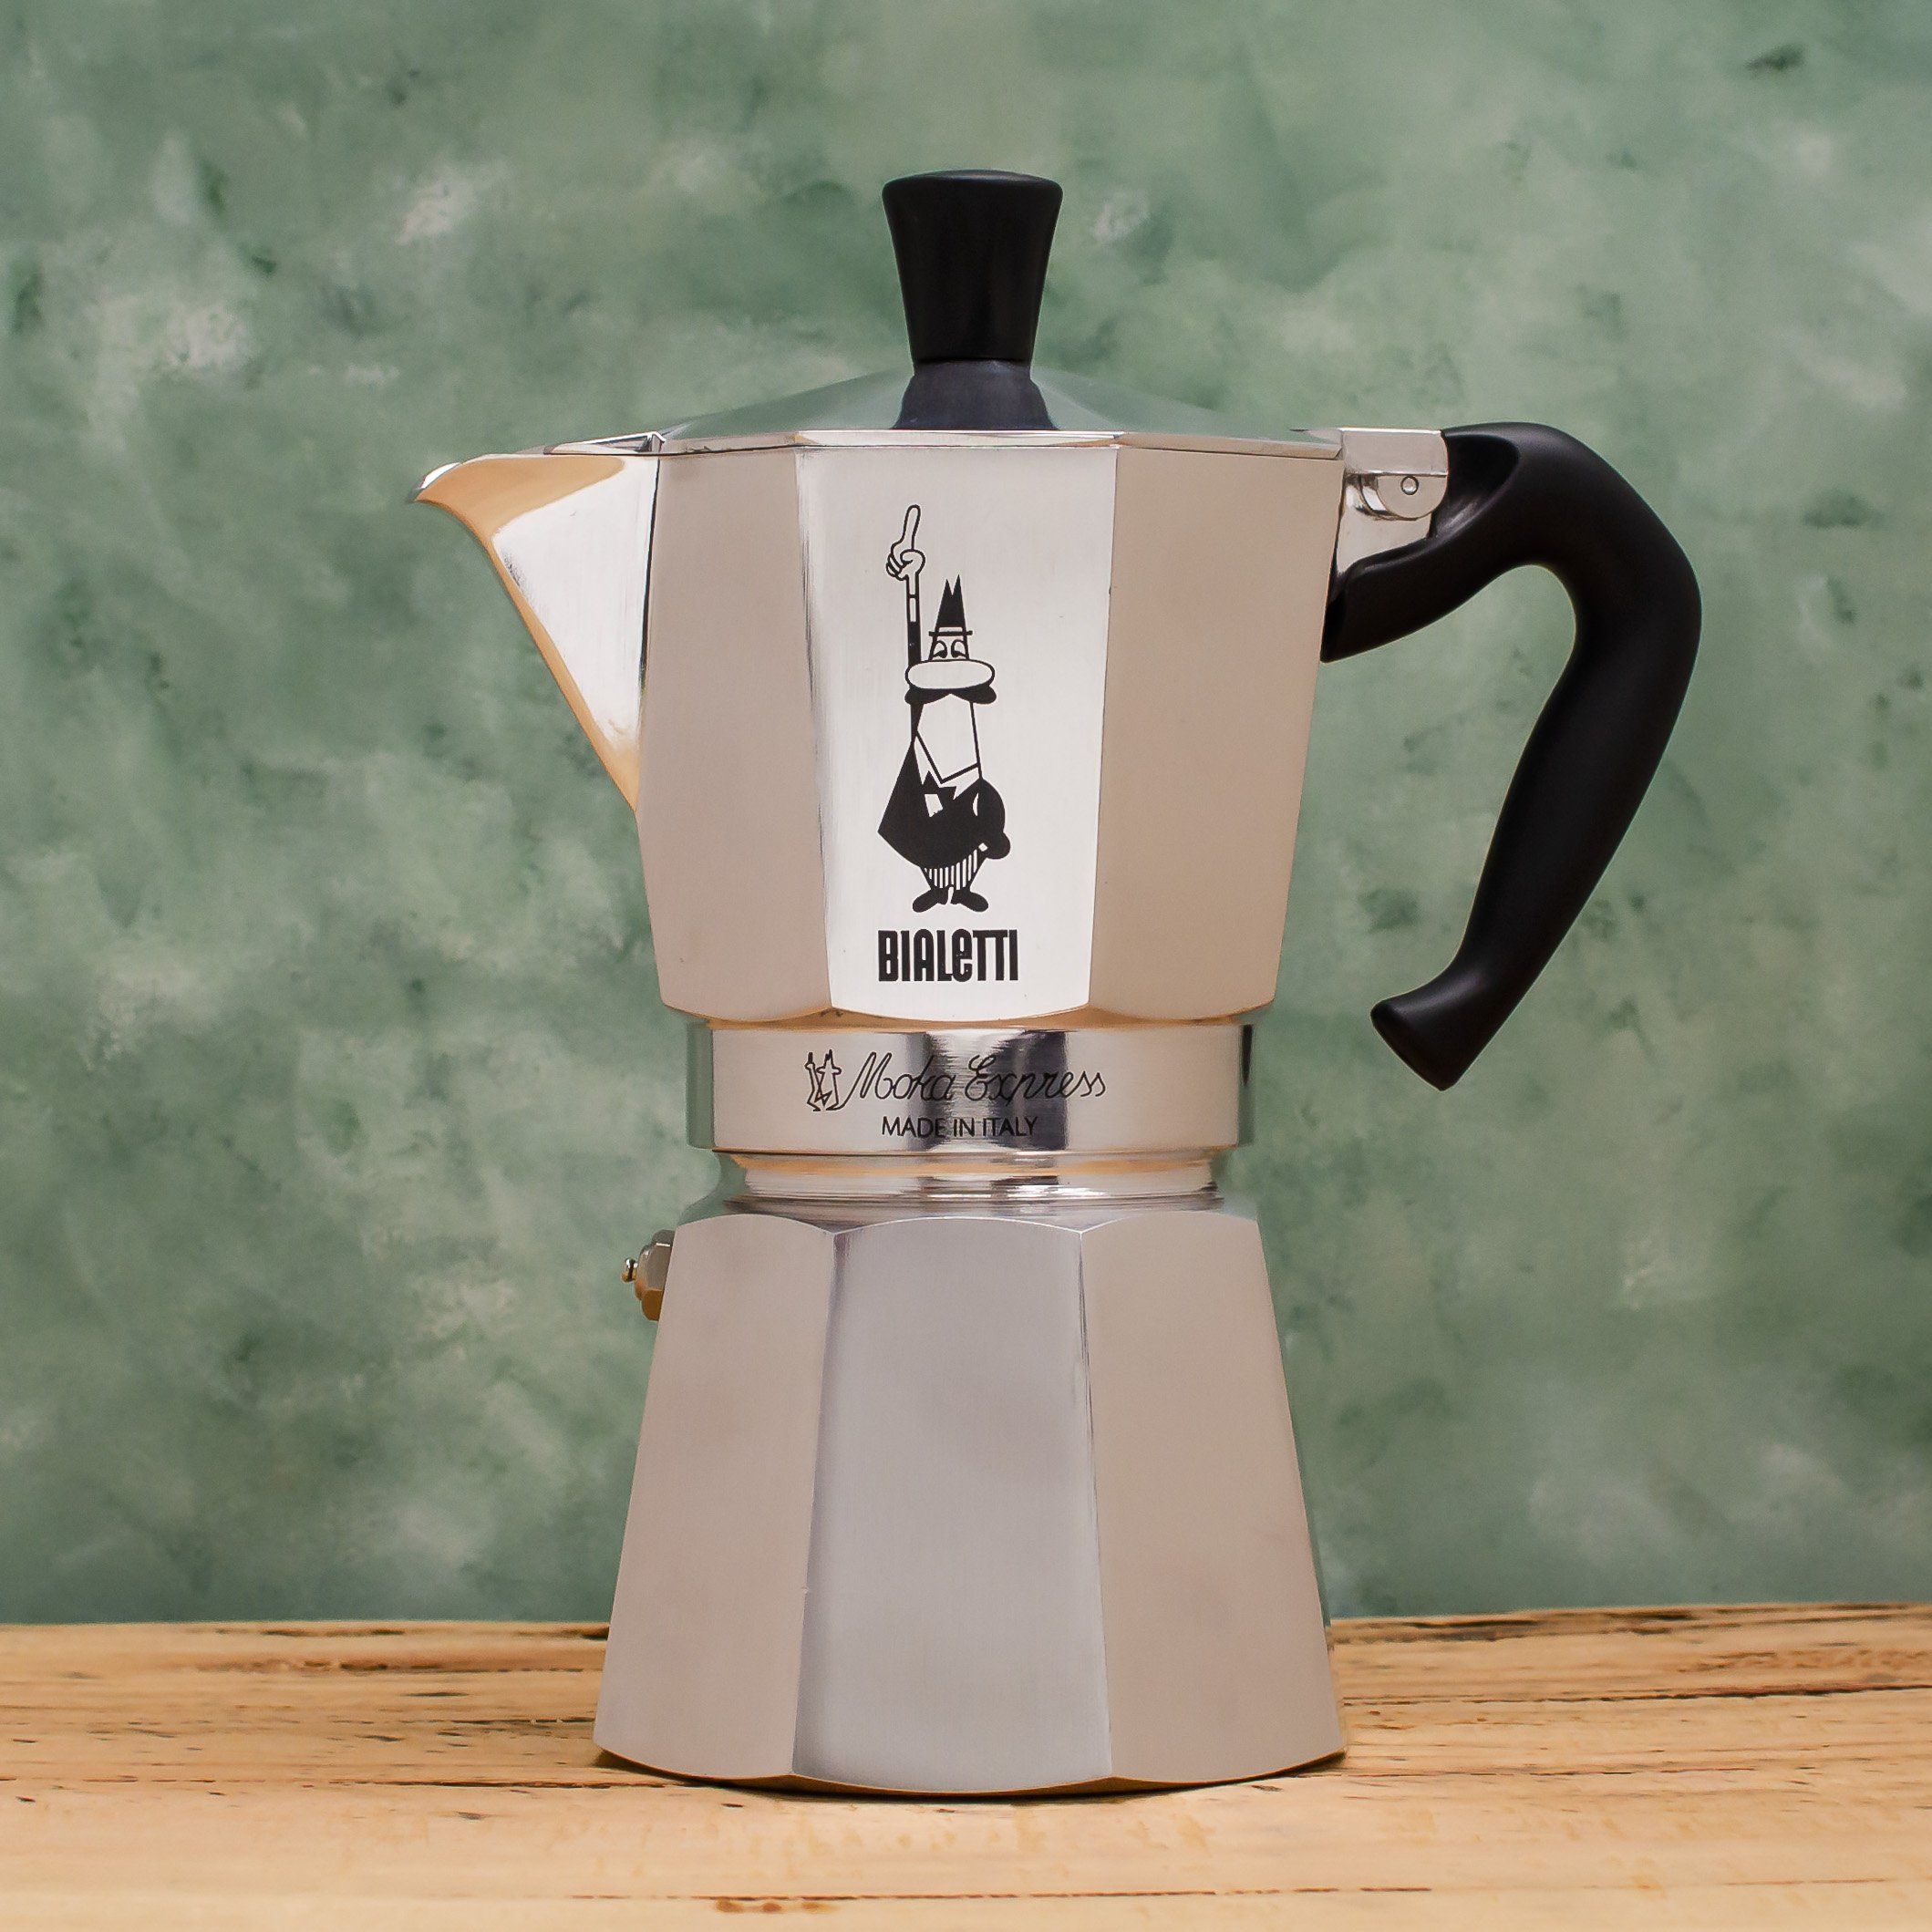 https://www.coffeacoffee.com.au/cdn/shop/products/Bialetti_Moka_Express_6_cup.jpg?v=1613380996